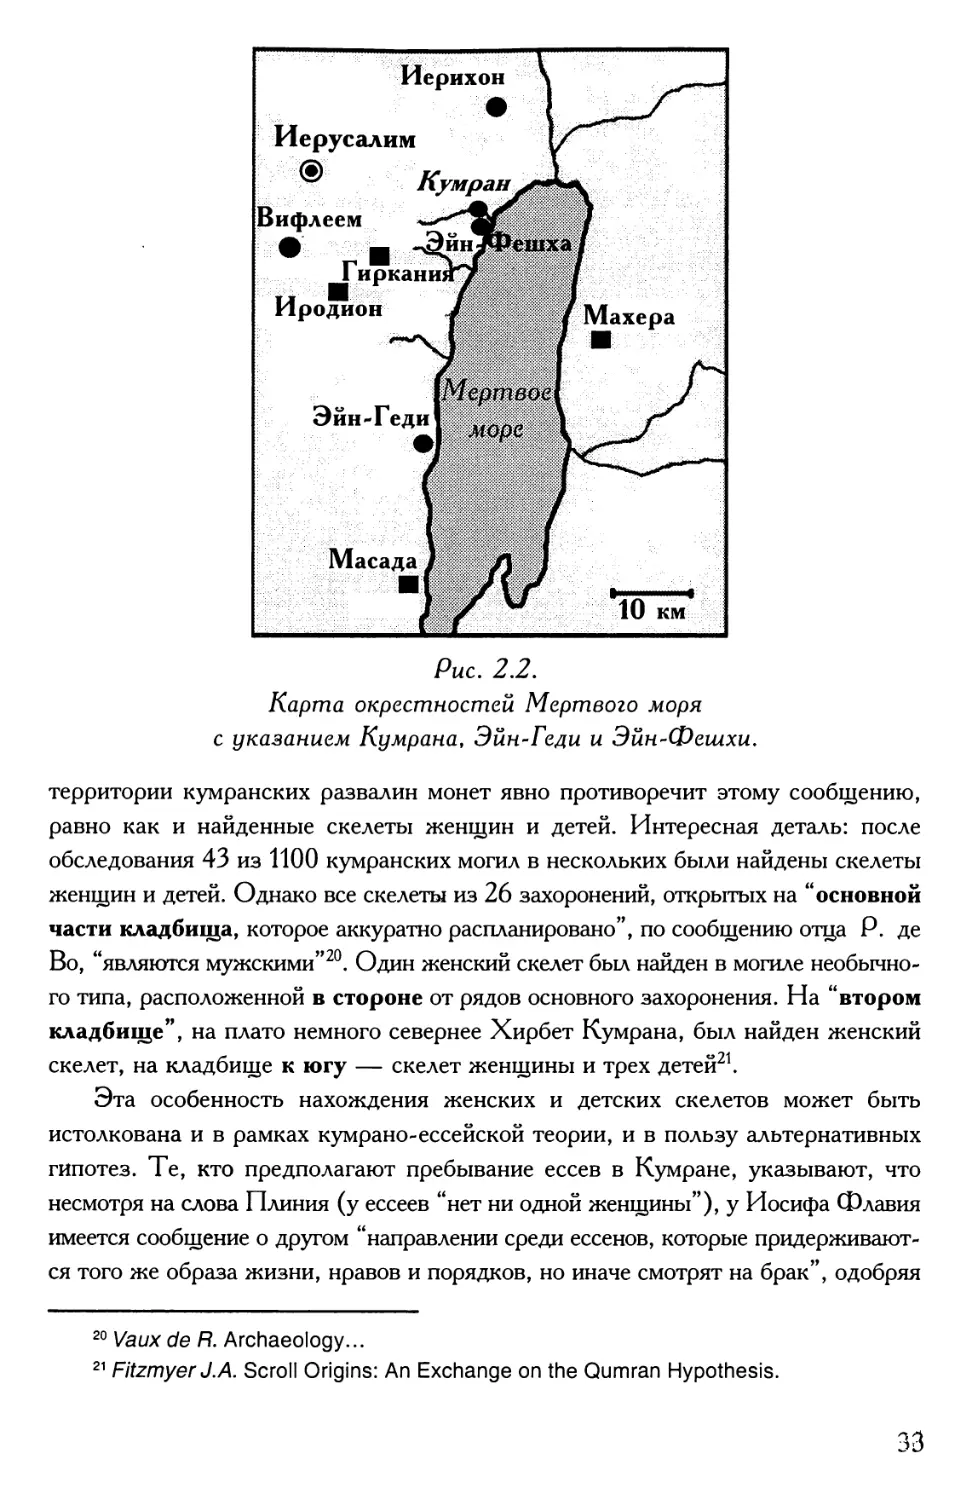 Рис 2.2. Карта окрестностей Мертвого моря